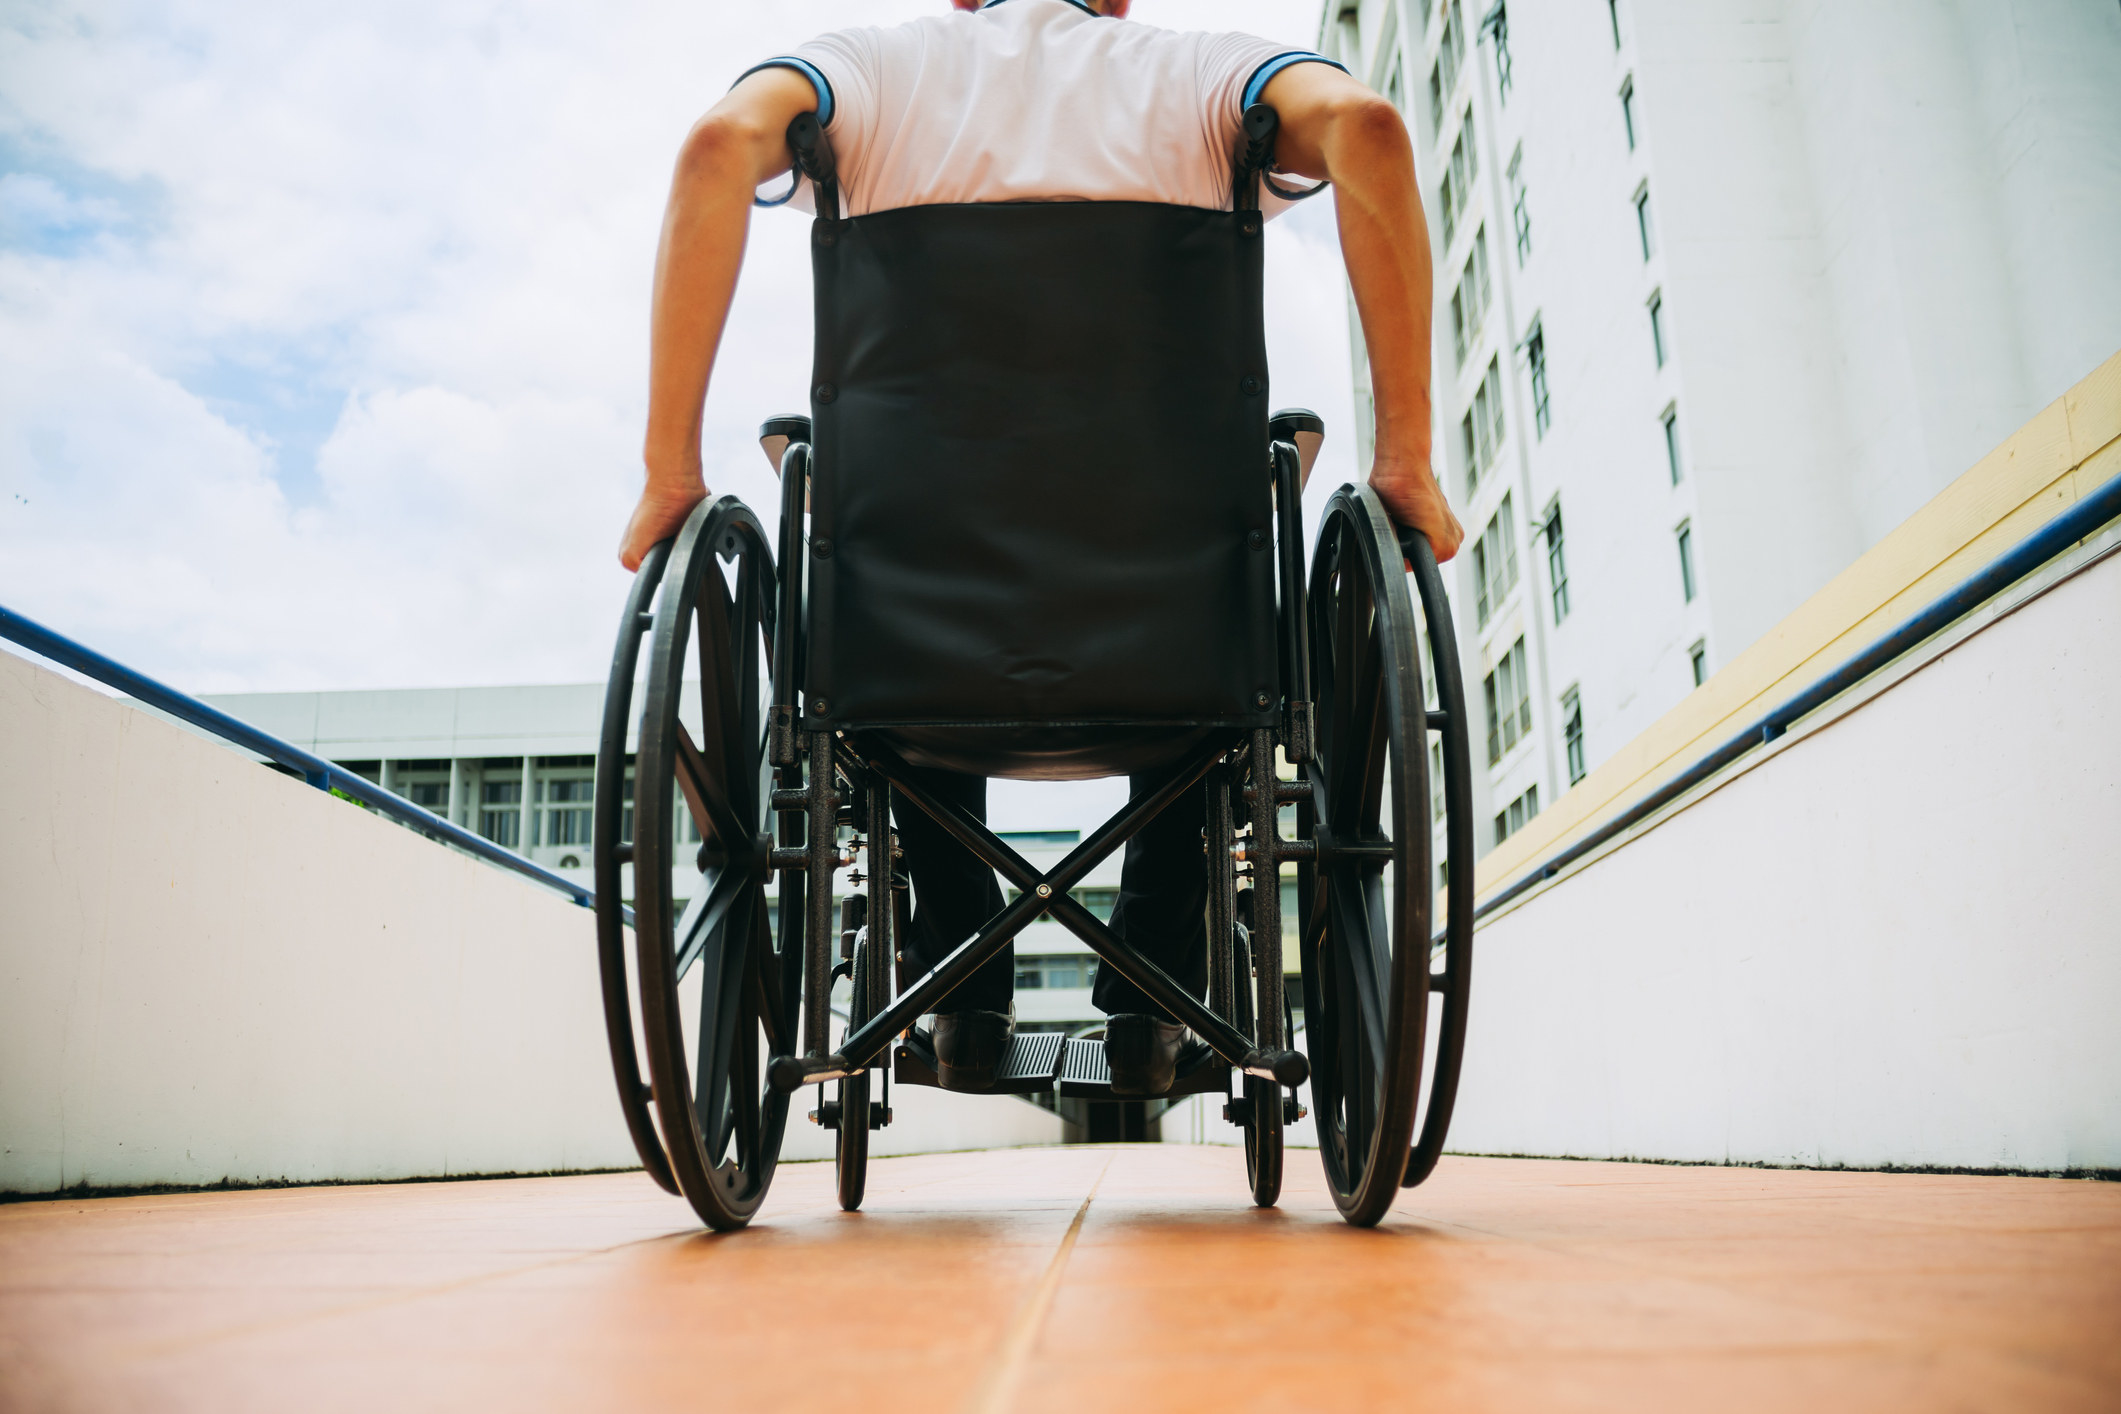 A man in a wheelchair.